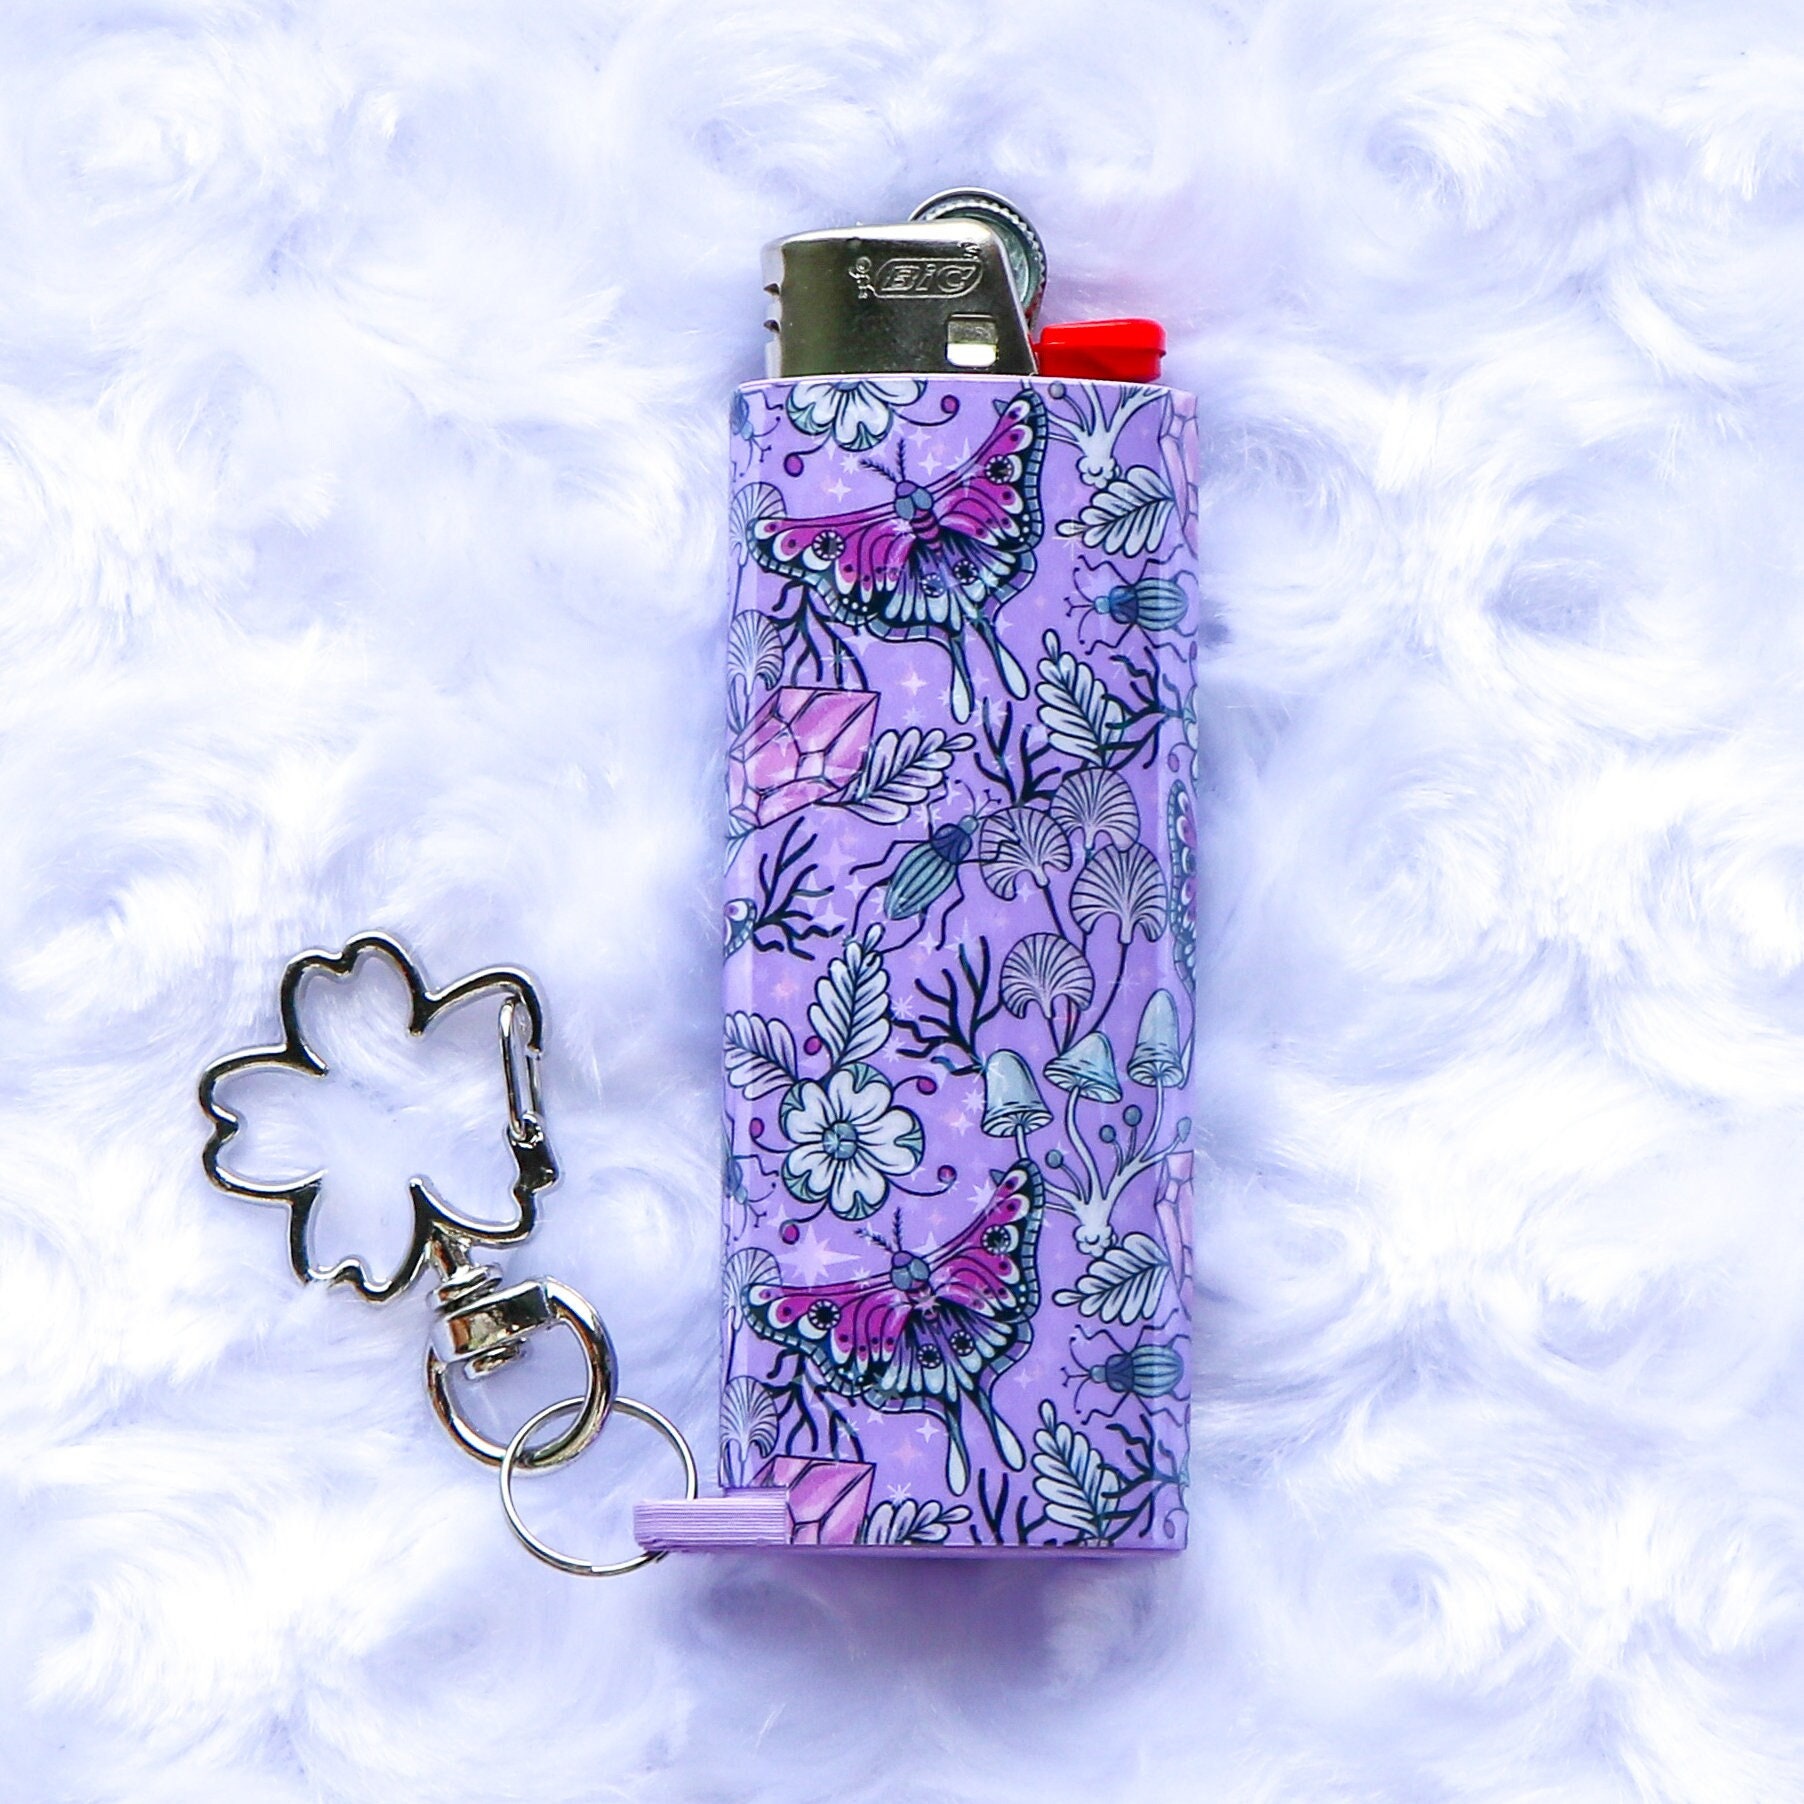 Lucklybestseller Metal Lighter Case Cover Holder Vintage Floral